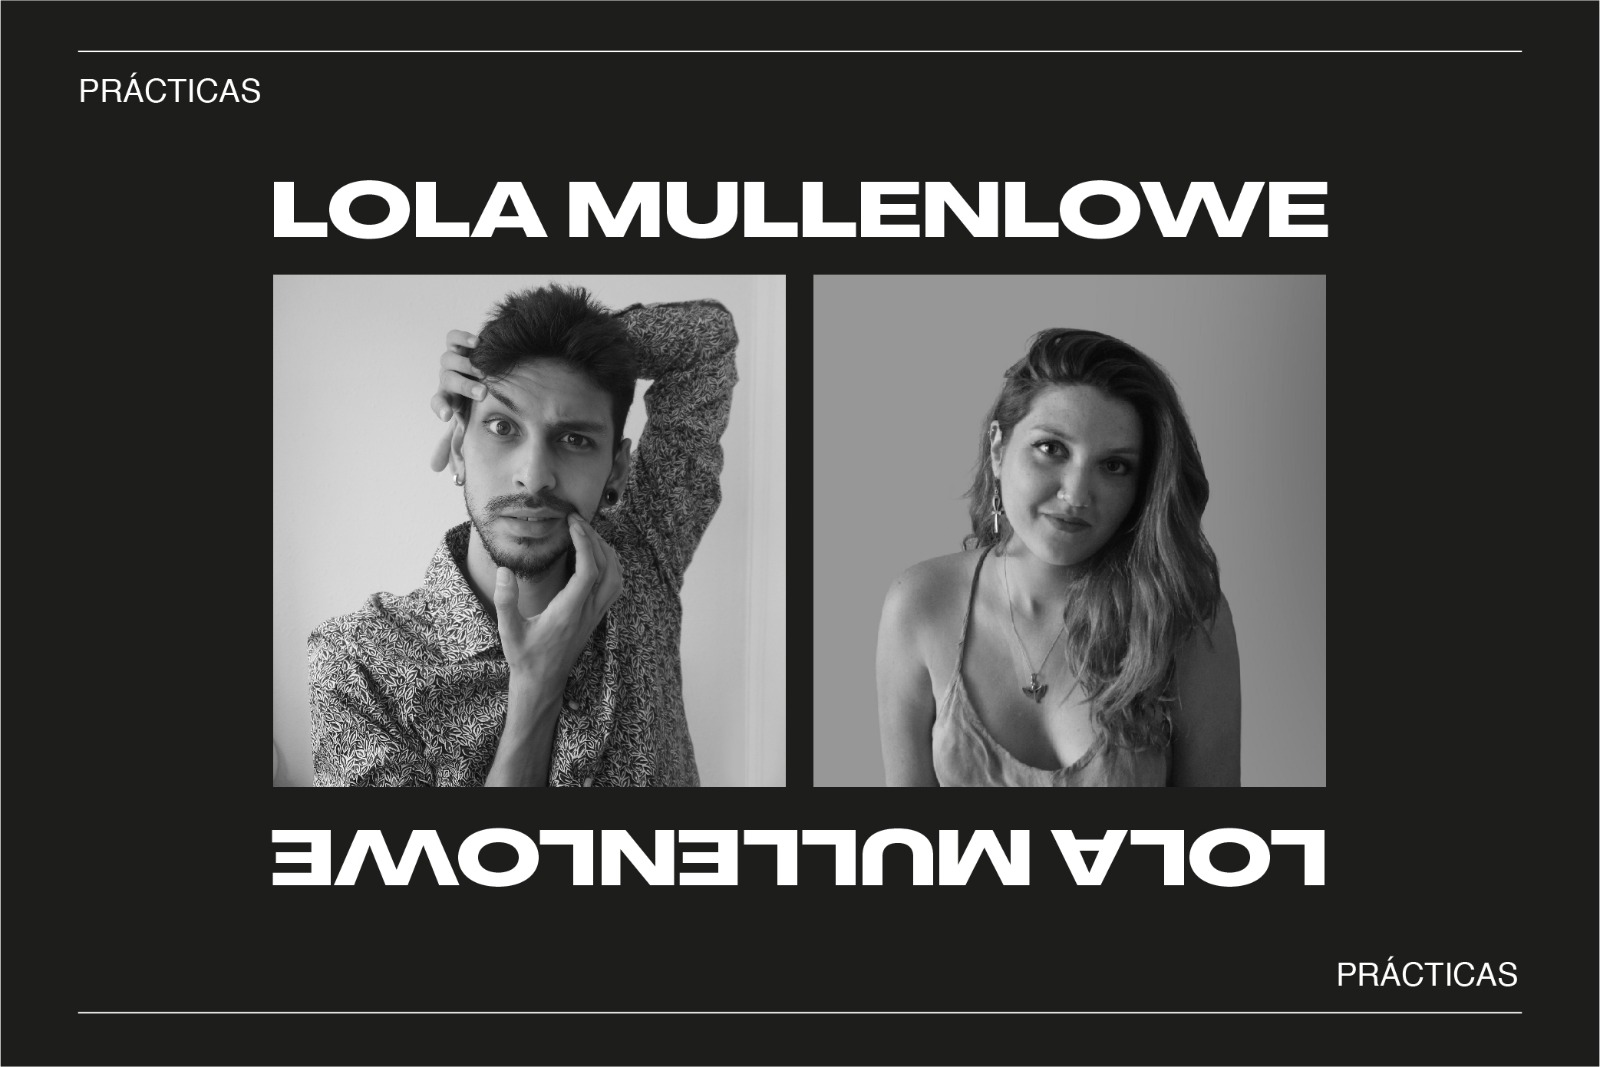 Lola Mullenlowe, Manuel Pasqualetti, Laura Yague